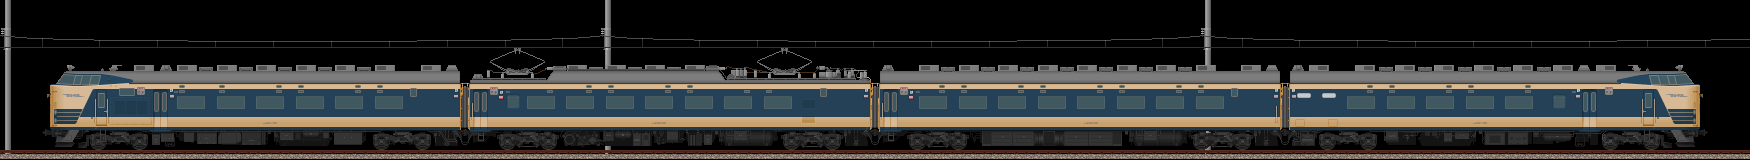 583系特急形電車(クハネ581組込)